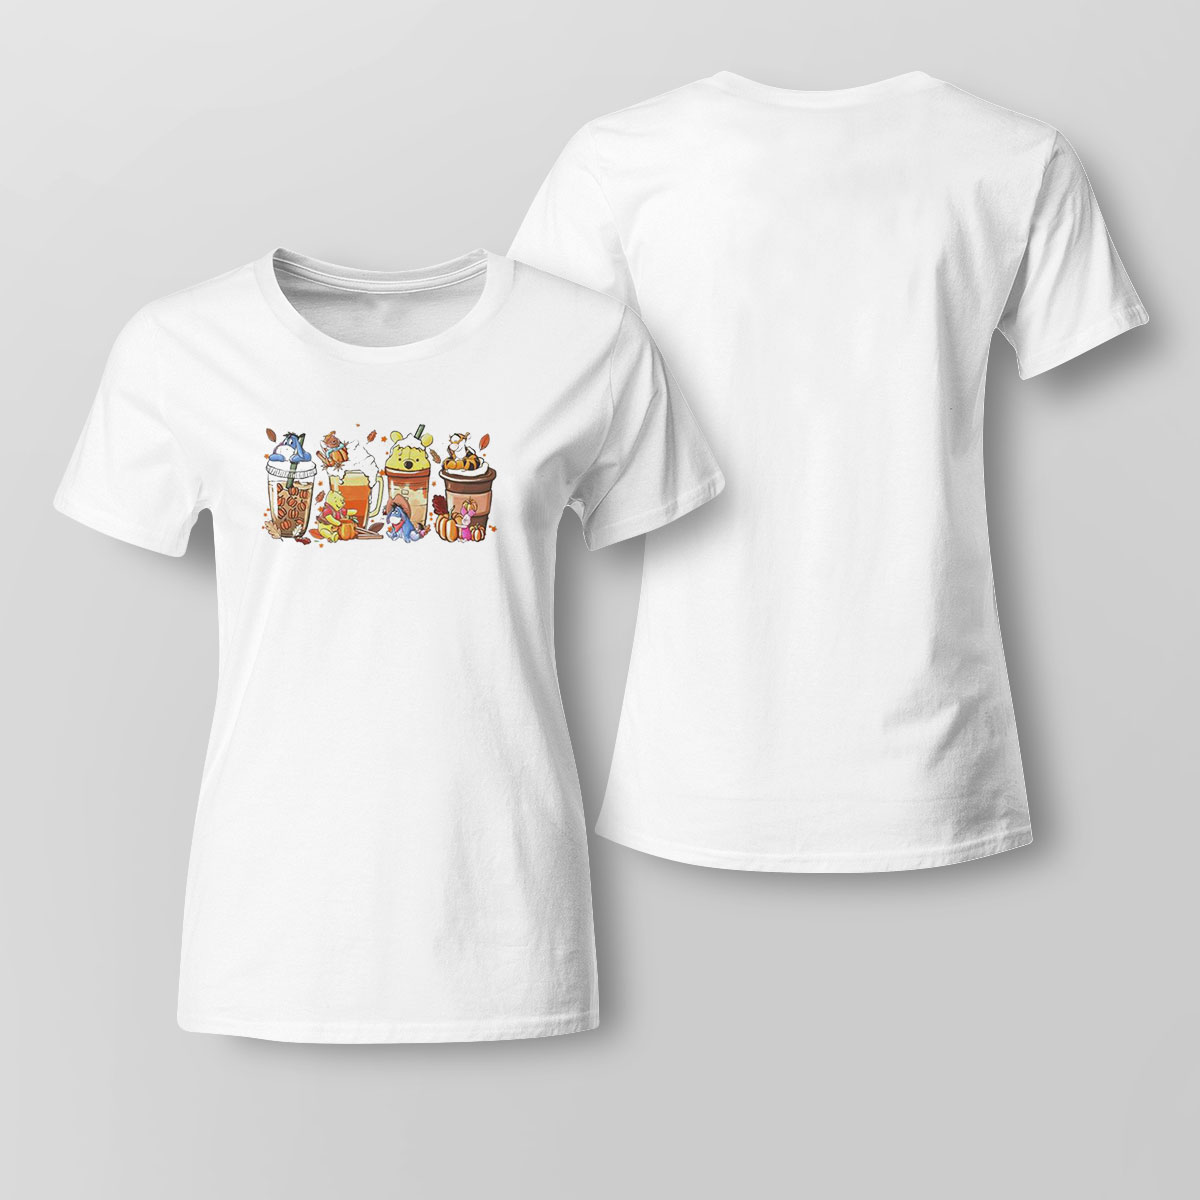 Winnie-the-pooh Characters Coffee Shirt Sweatshirt, Tank Top, Ladies Tee